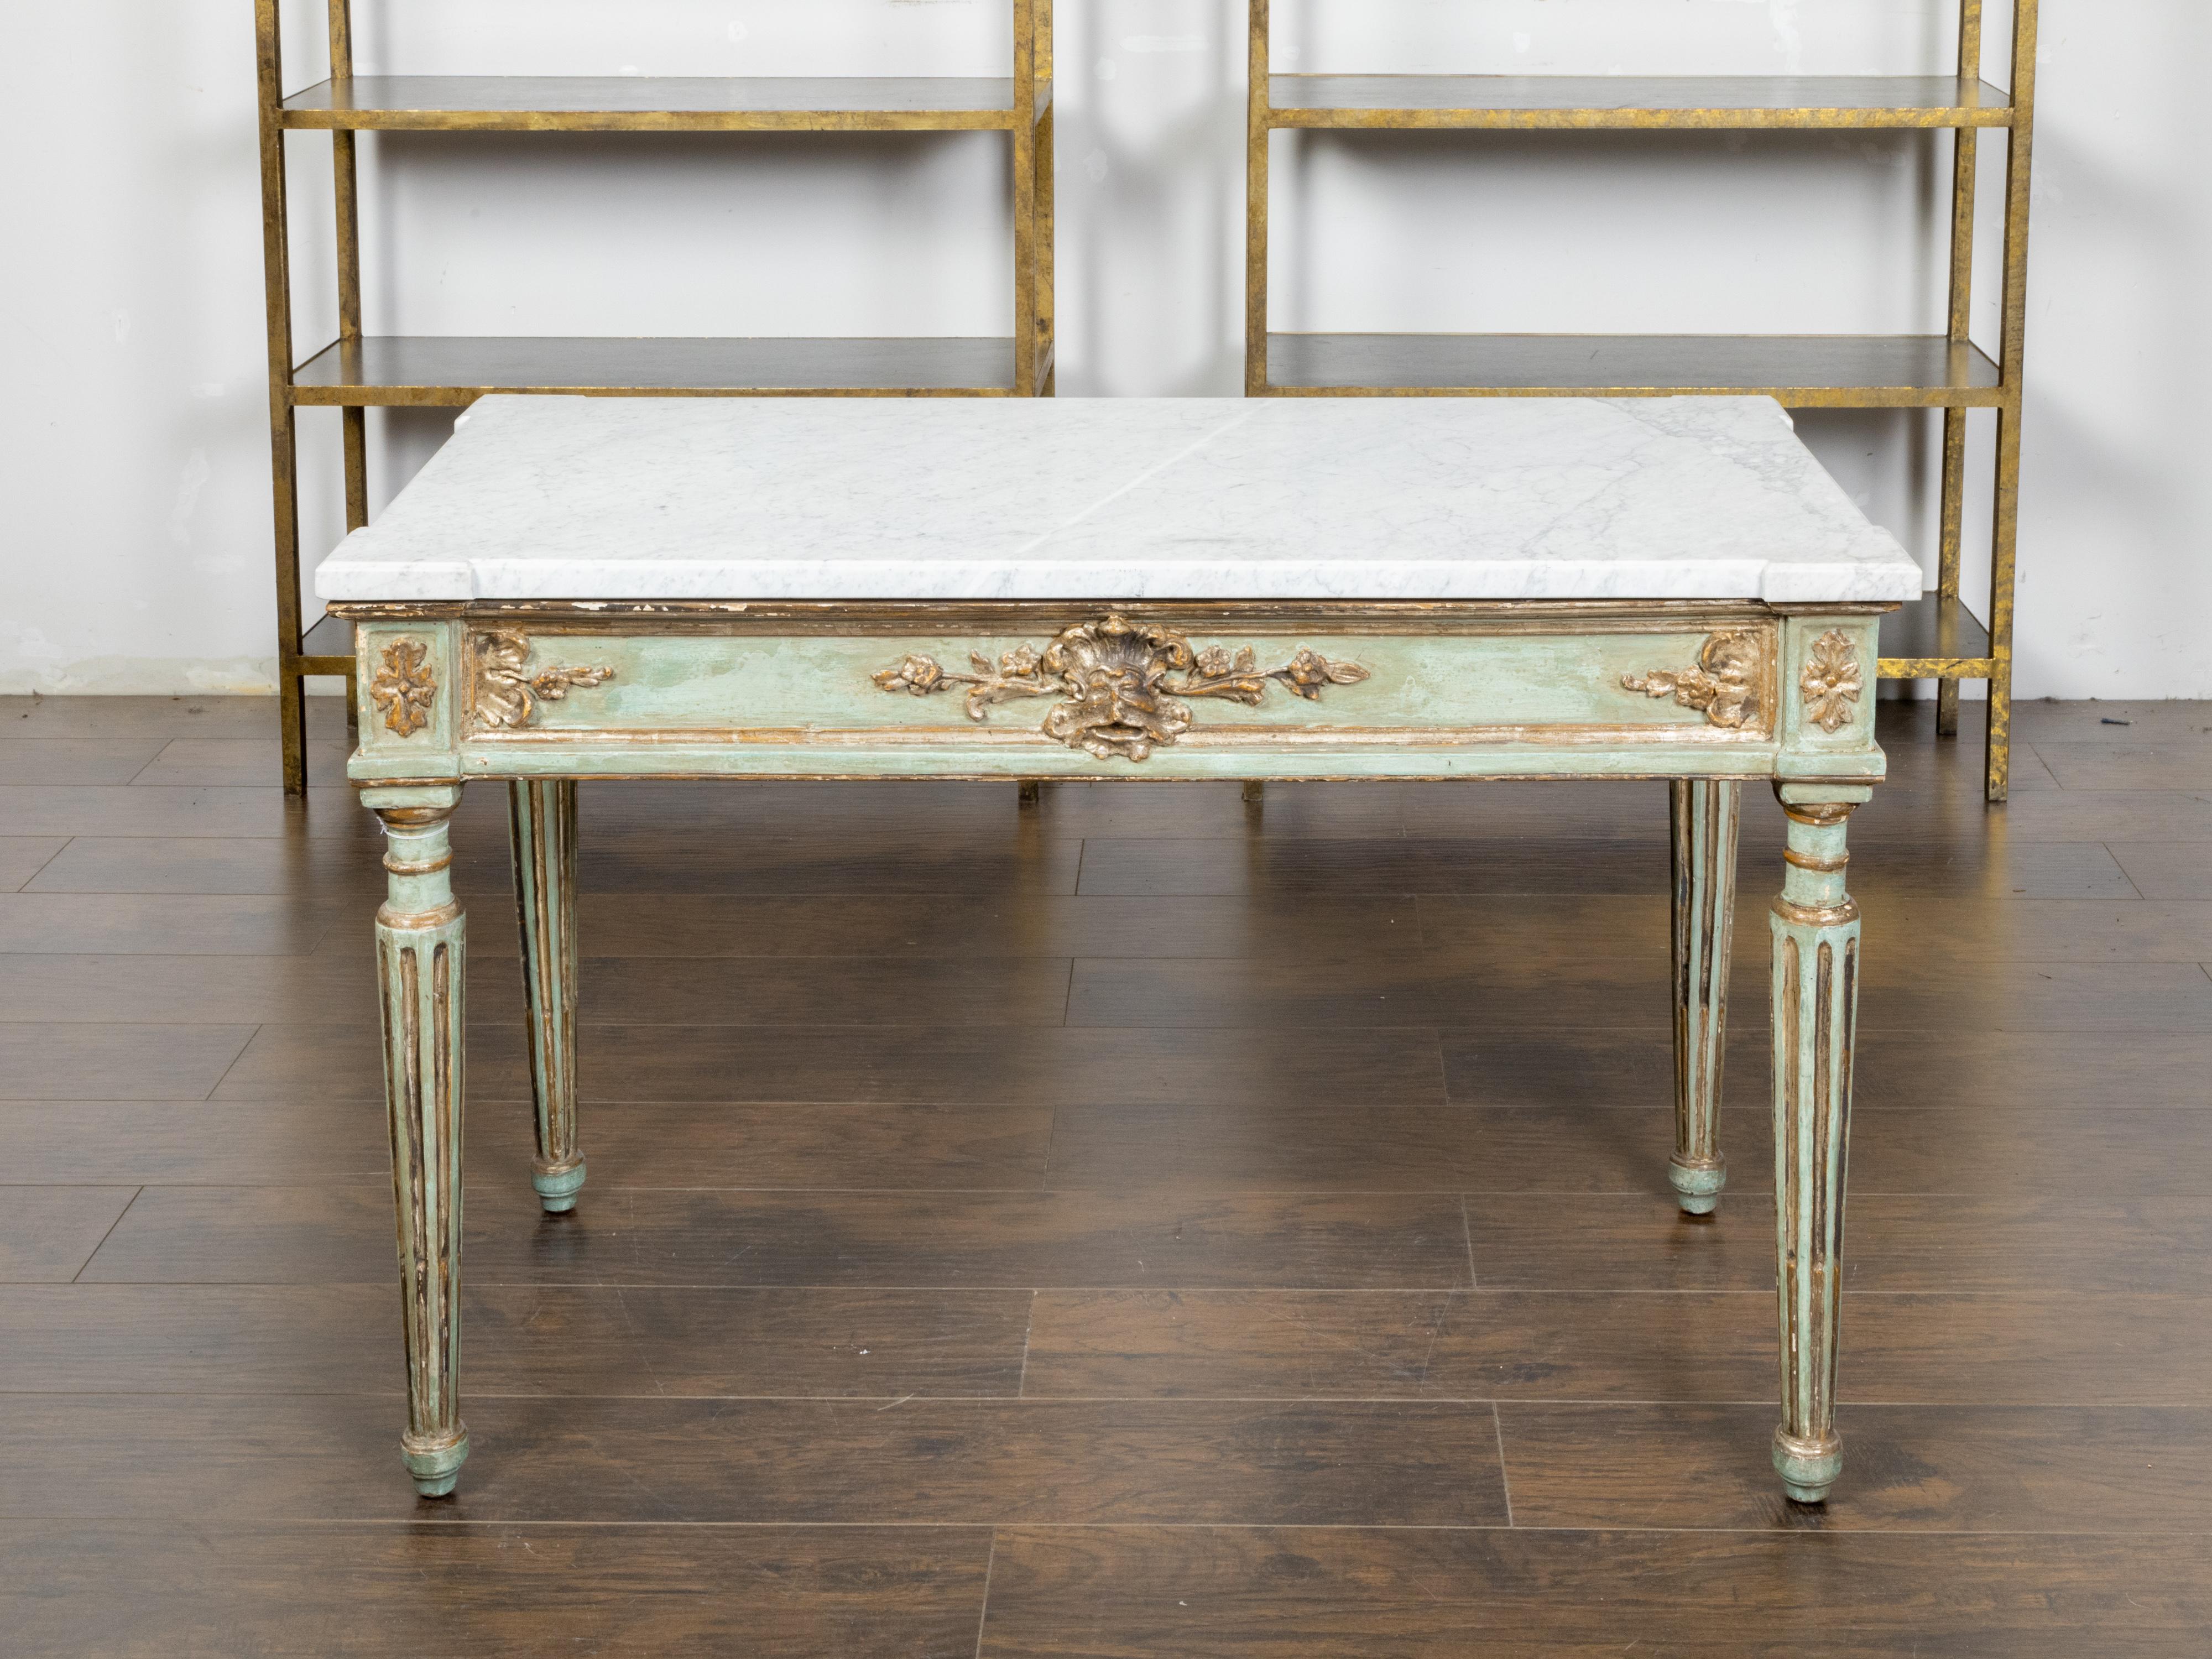 Table console en bois peint de style néoclassique italien du XIXe siècle, avec un plateau en marbre blanc, des feuillages, des coquilles et des visages de mascarons dorés et sculptés, et des pieds cannelés. Créée en Italie au XIXe siècle, cette